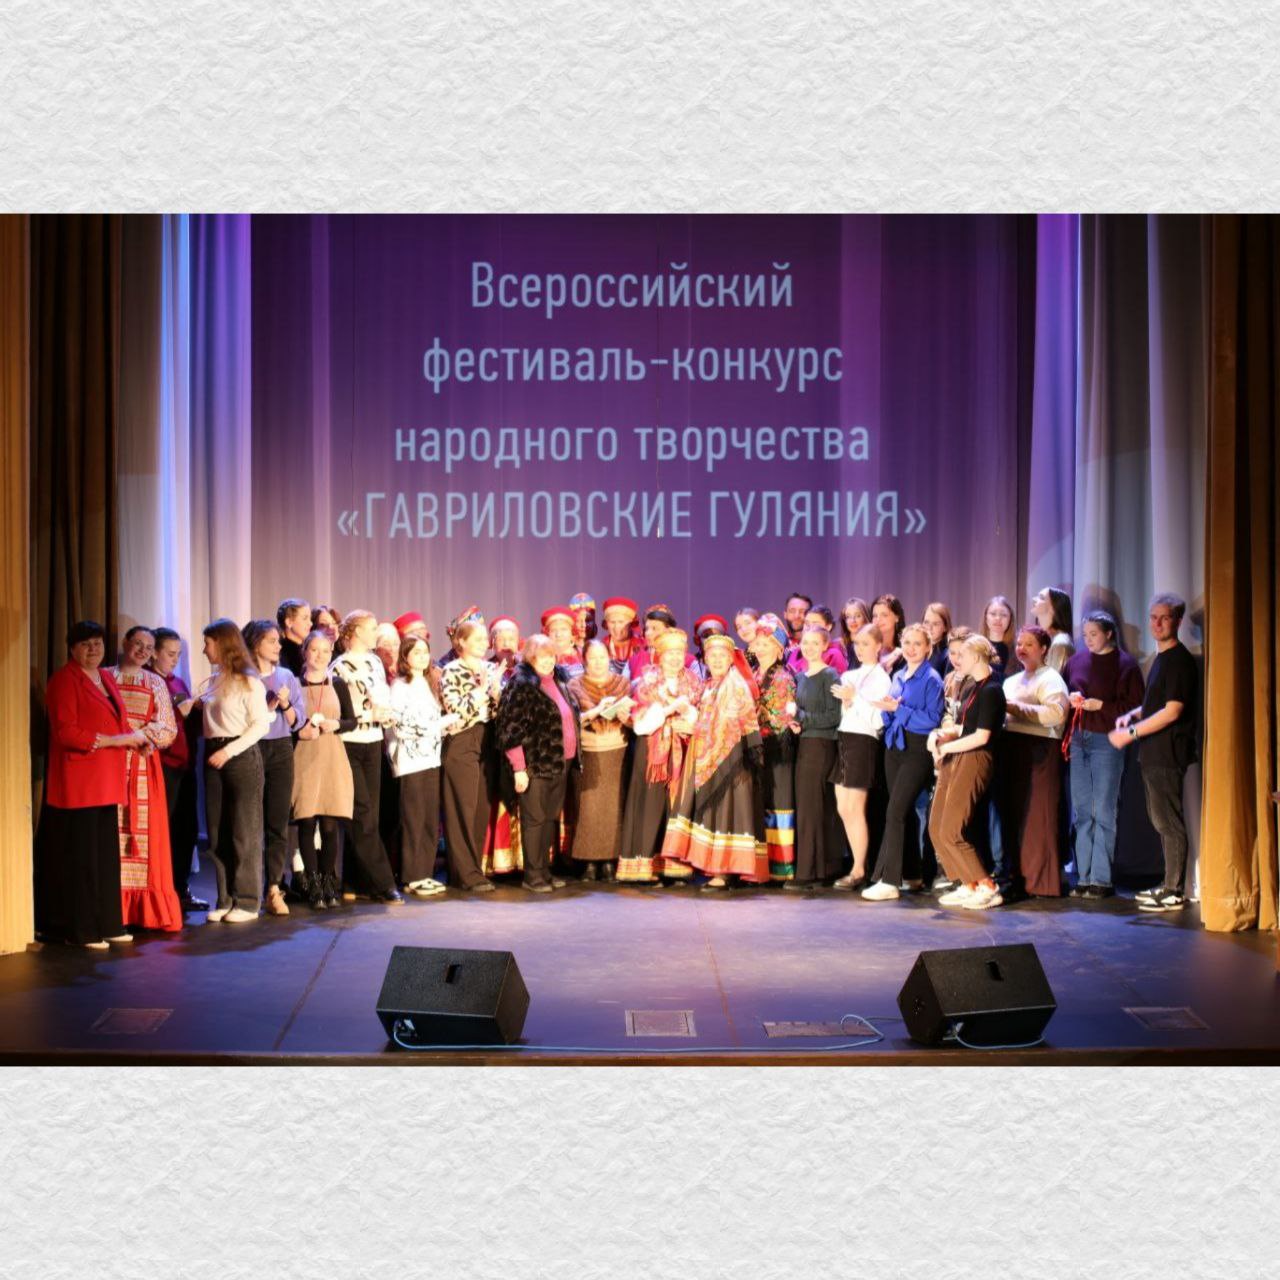 14 октября состоялся наш традиционный Всероссийский фестиваль-конкурс народного творчества «ГАВРИЛОВСКИЕ ГУЛЯНИЯ»!